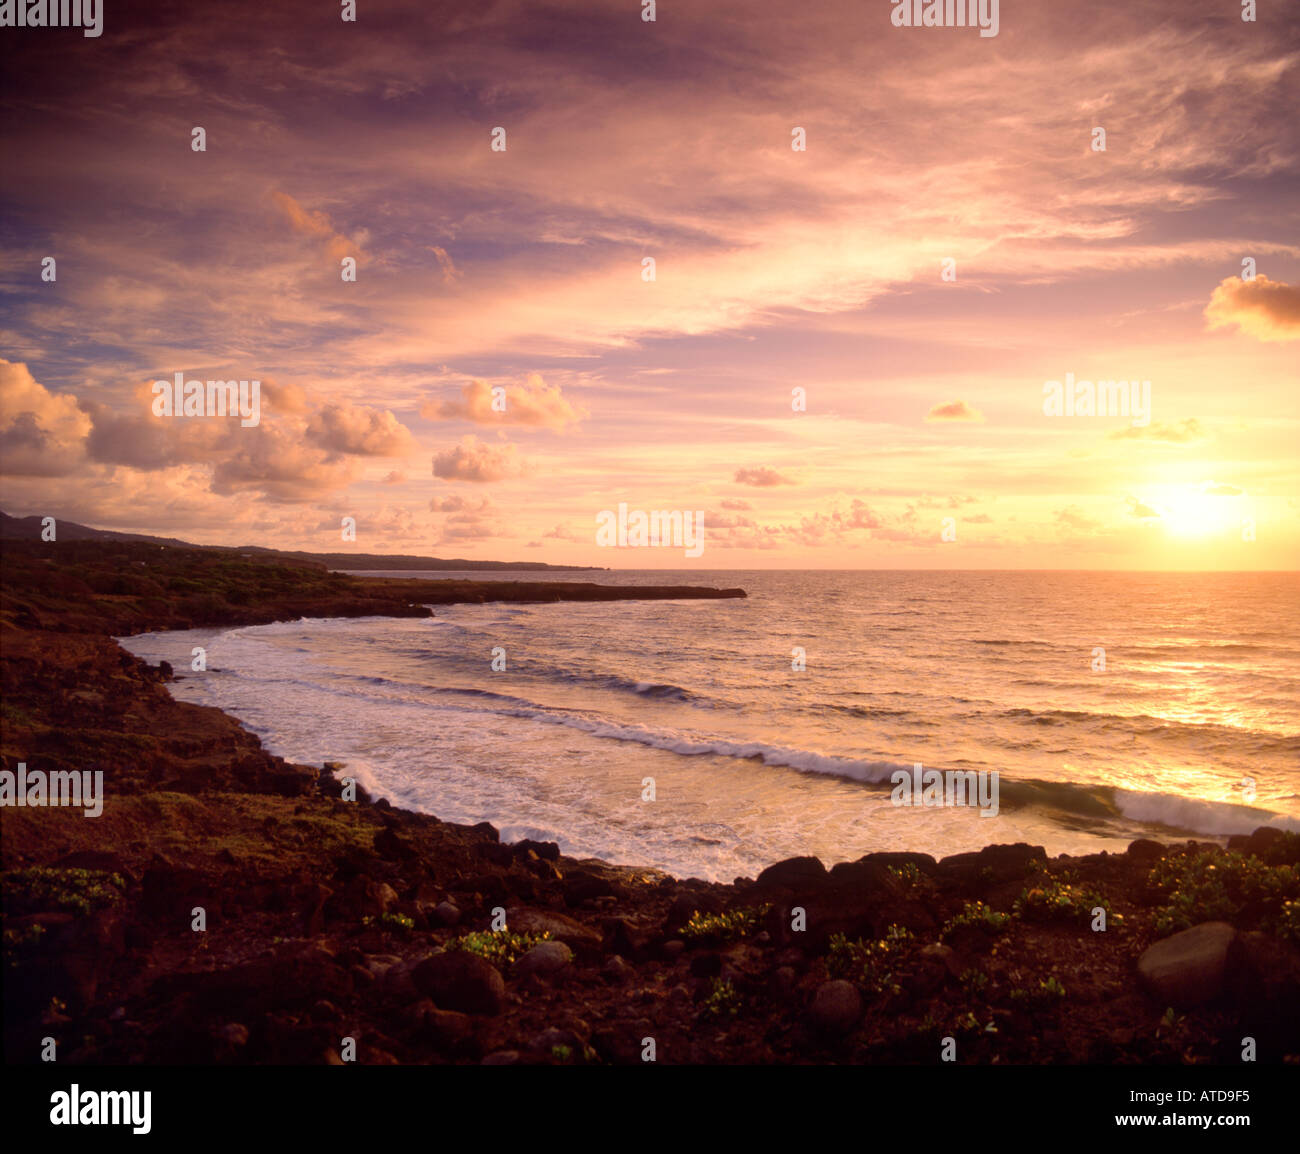 Giro delle onde della costa rocciosa di una spiaggia dell'isola caraibica di Grenada al tramonto Foto Stock